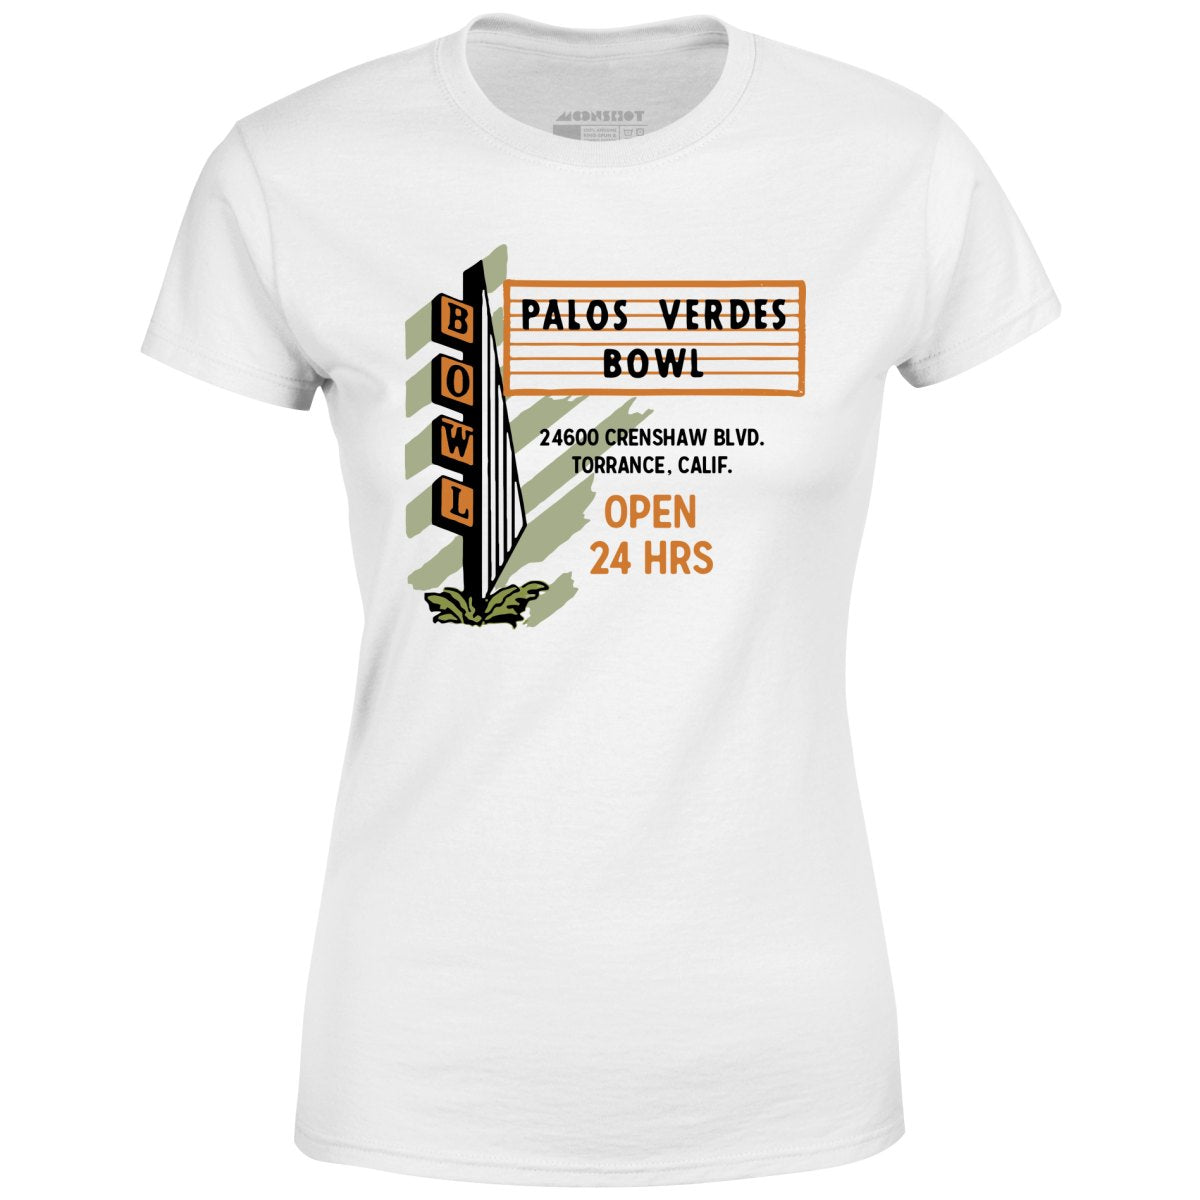 Palos Verdes Bowl - Torrance, CA - Vintage Bowling Alley - Women's T-Shirt